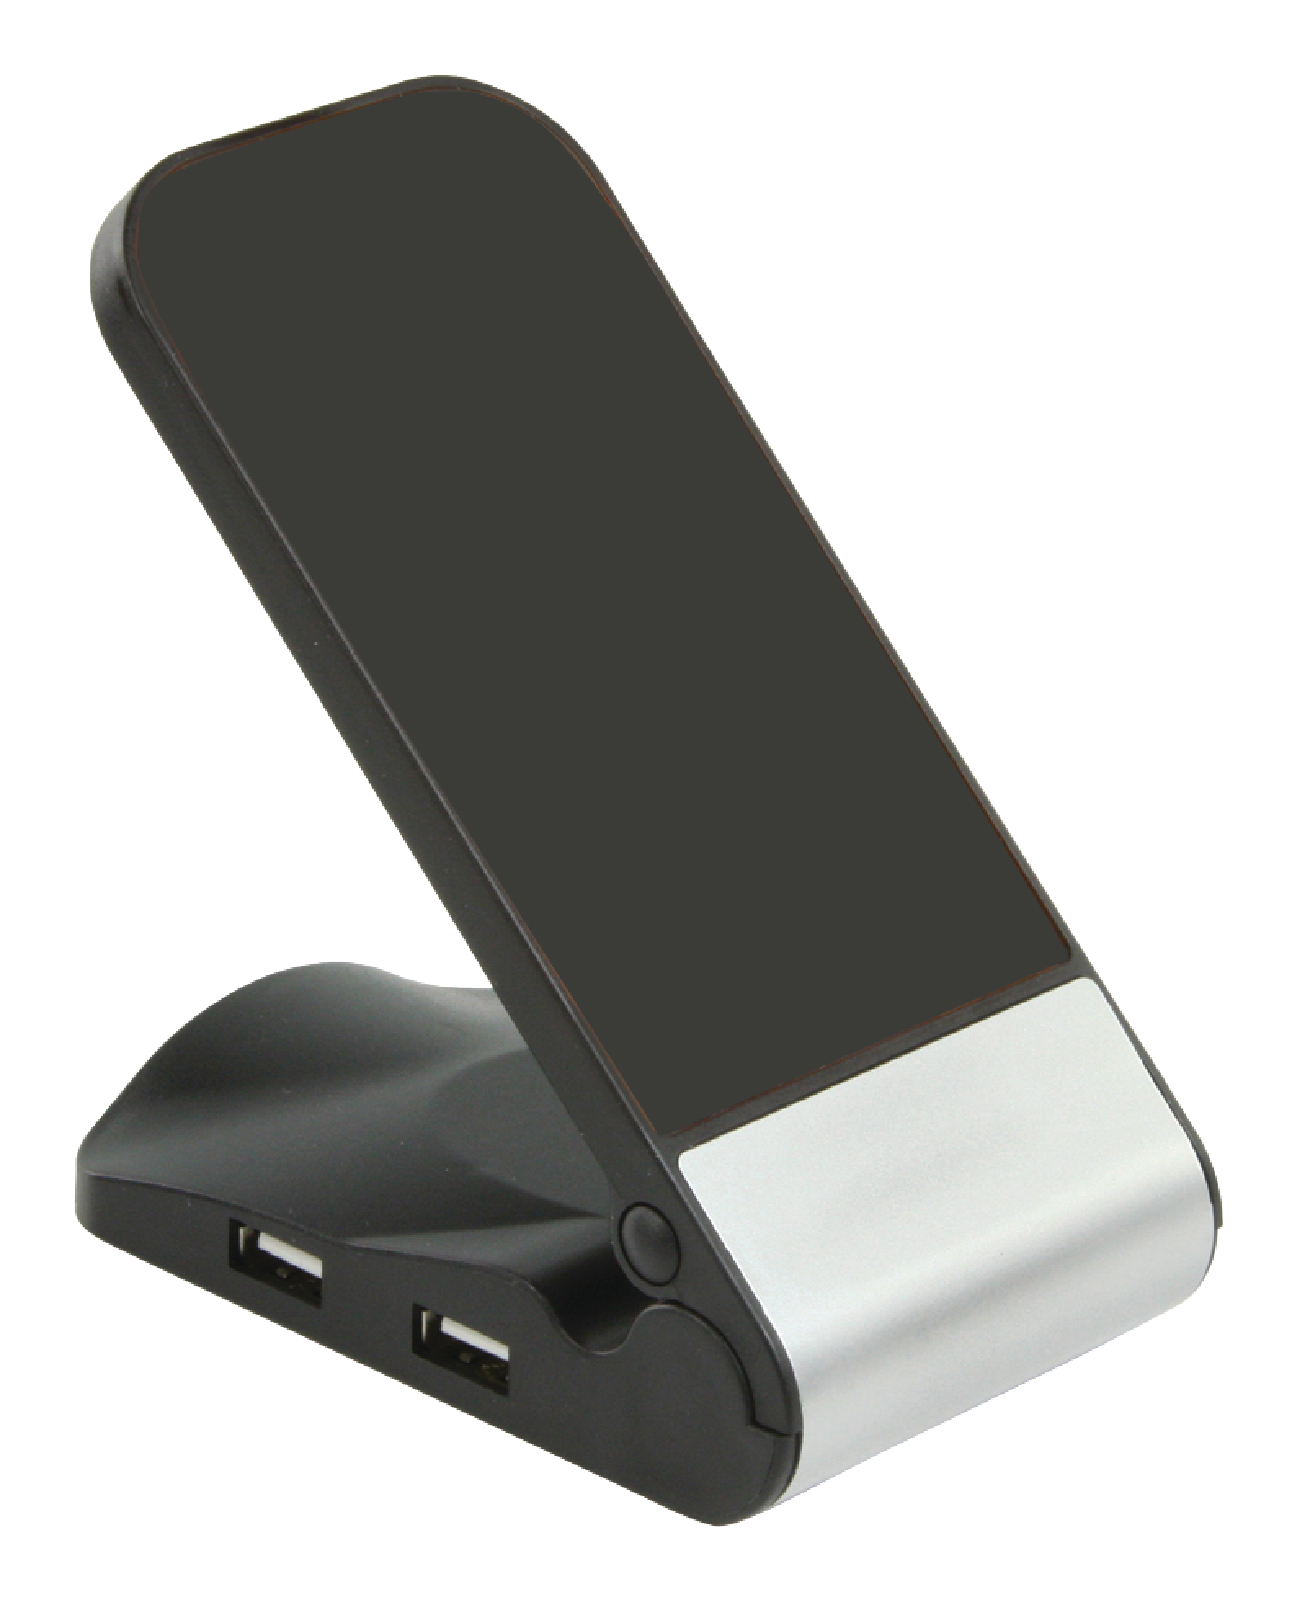 basicXL externí čtyřportový USB 2.0 HUB držák telefonu BXL-USB2HUB4